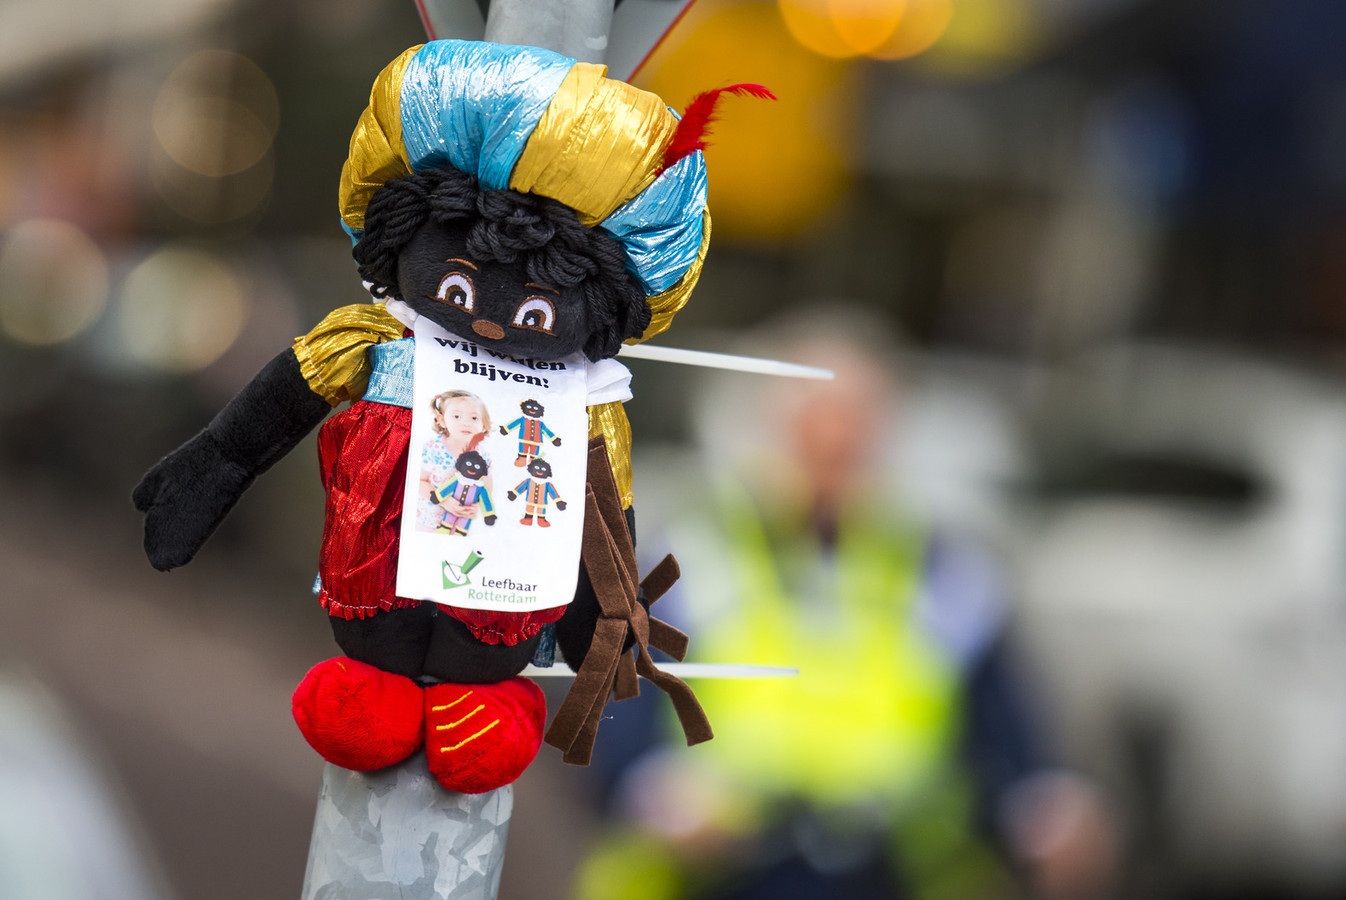 met de klok mee Smerig Agnes Gray Klant wil een zwarte Piet en anders niet' | Foto | AD.nl